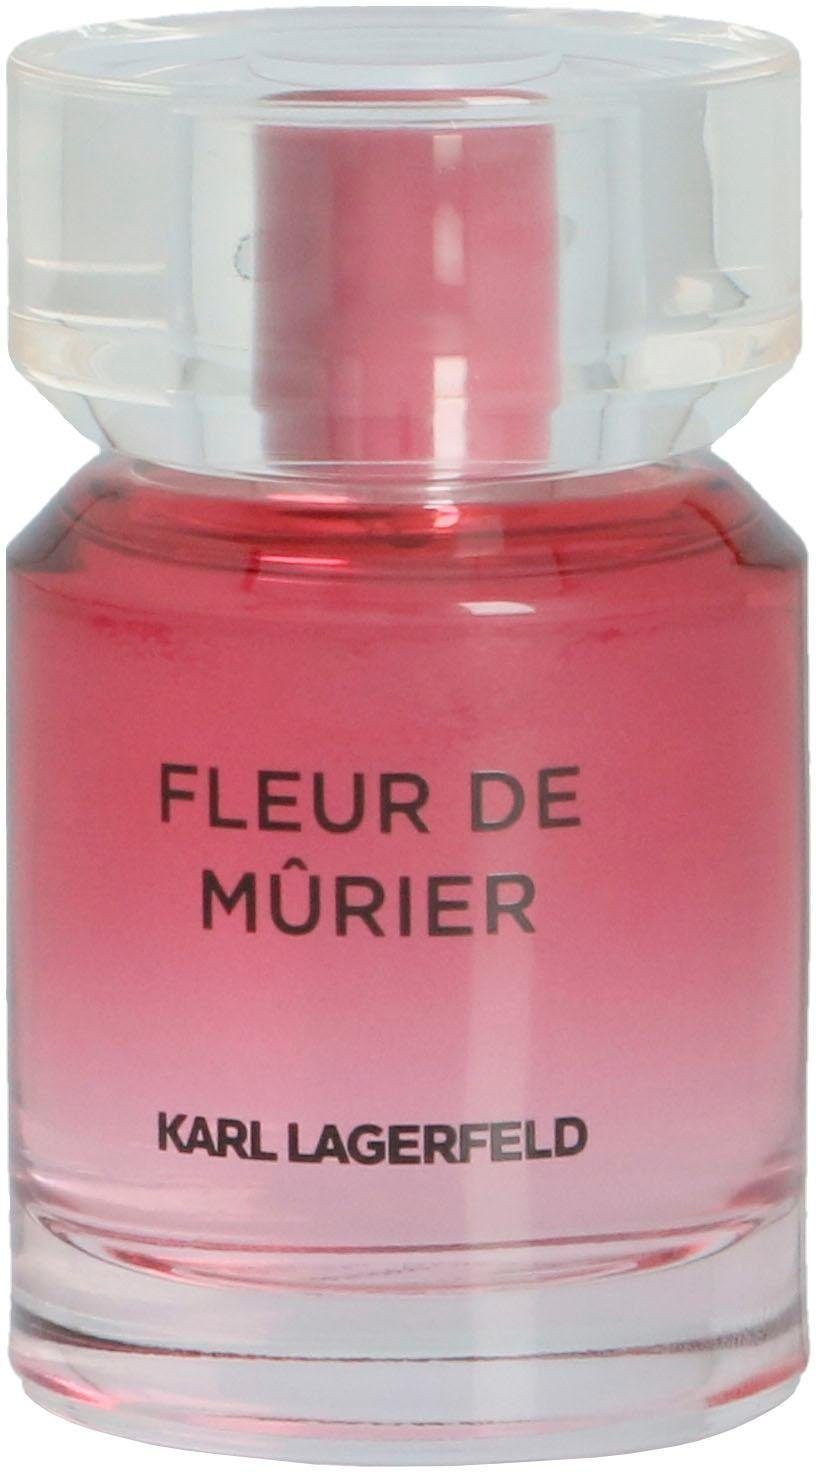 KARL LAGERFELD Eau de Parfum Fleur de Murier